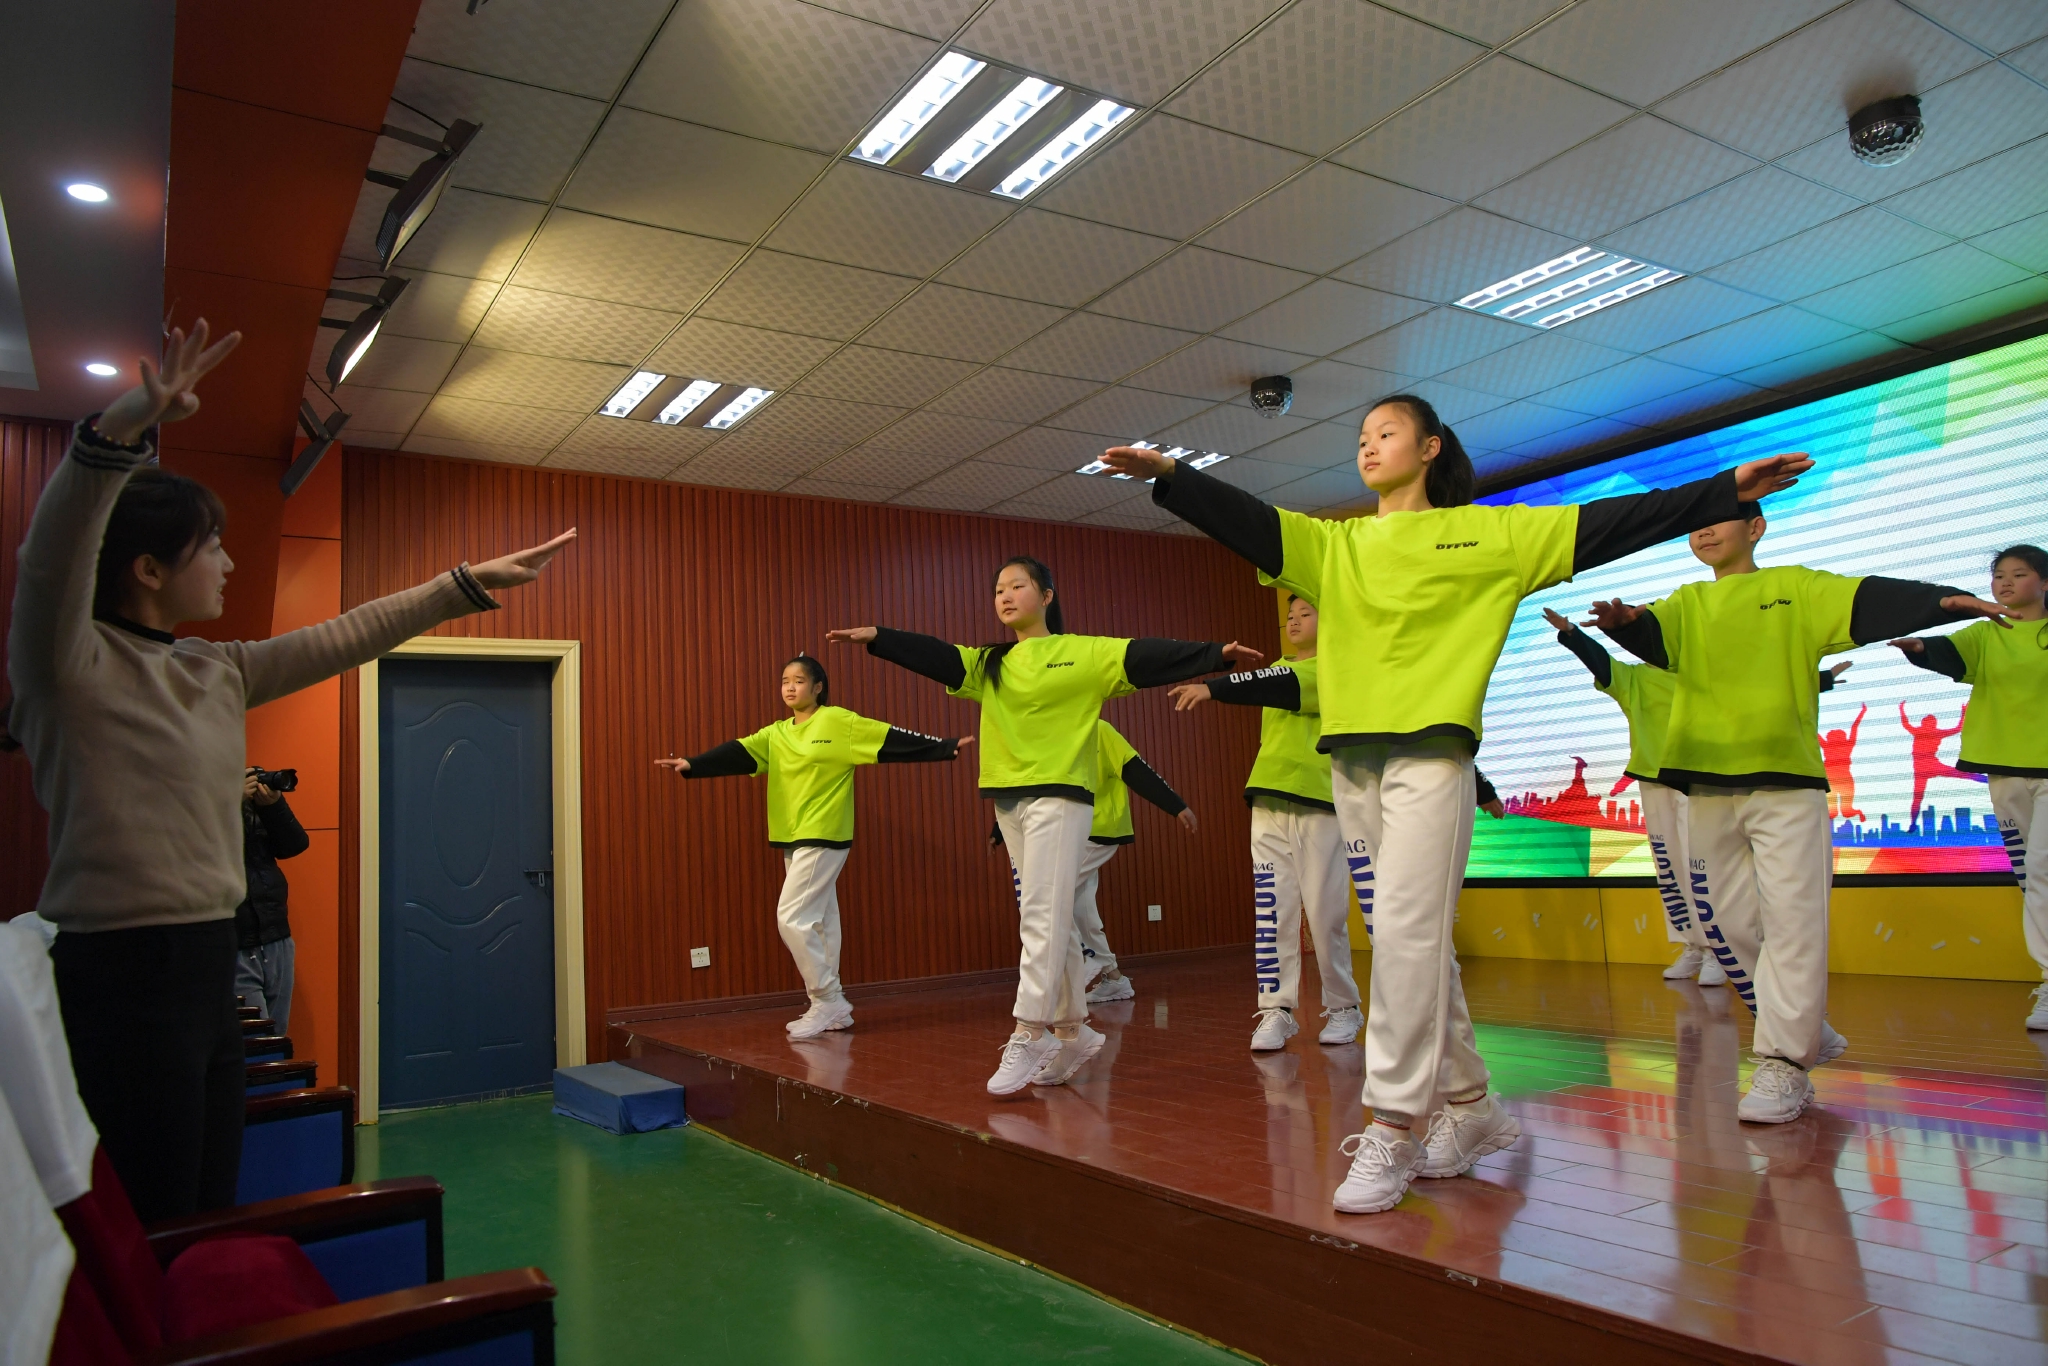 泗县特殊教育学校跳舞图片